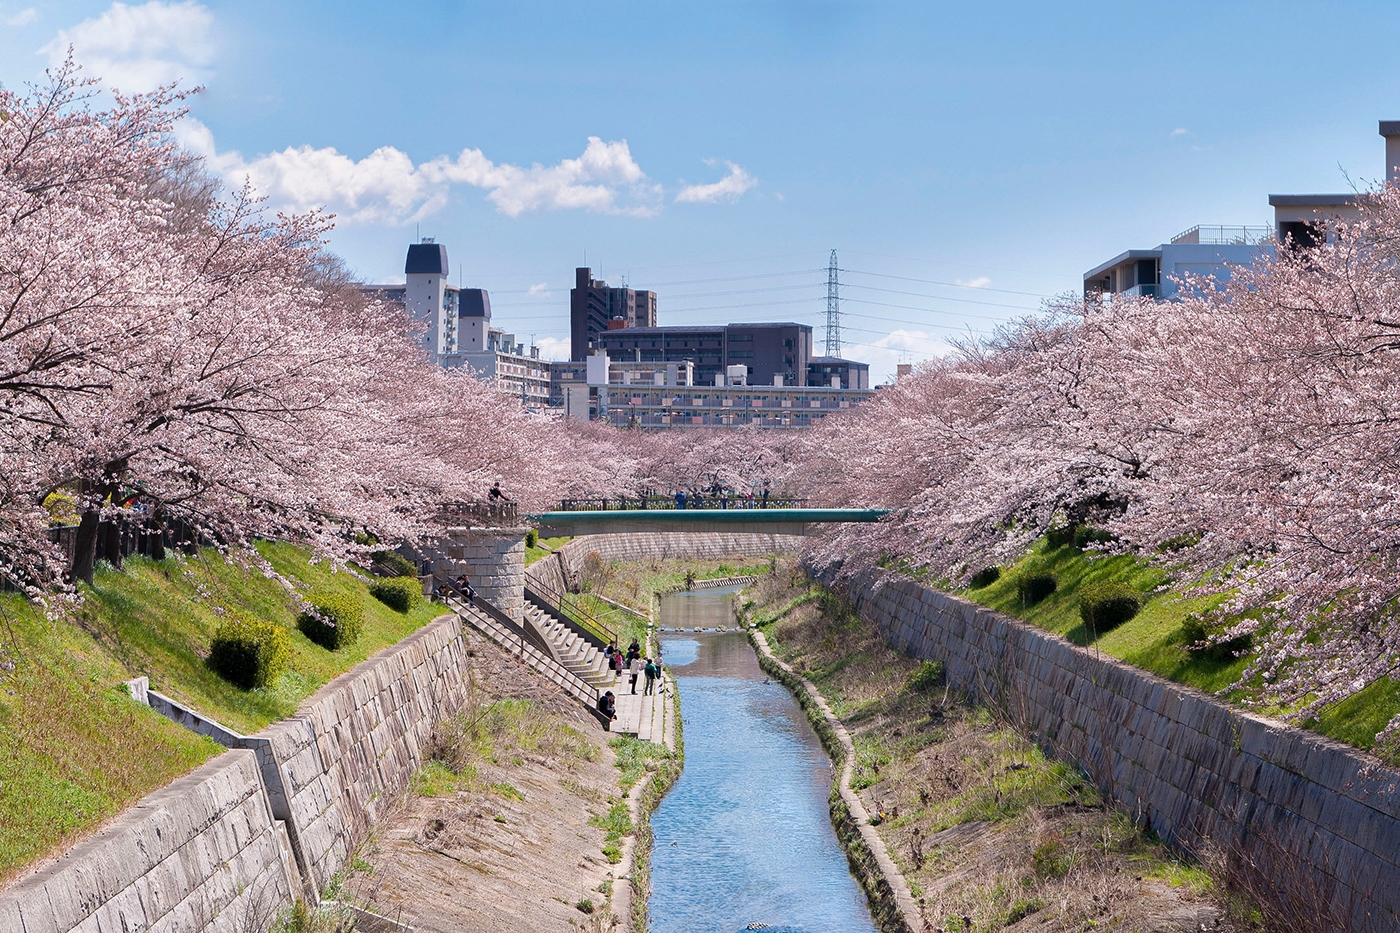 Natur trifft Stadtplanung: Sakura-Bäume verschönern den Flussdeich und bieten ein ruhiges und bescheidenes Spektakel